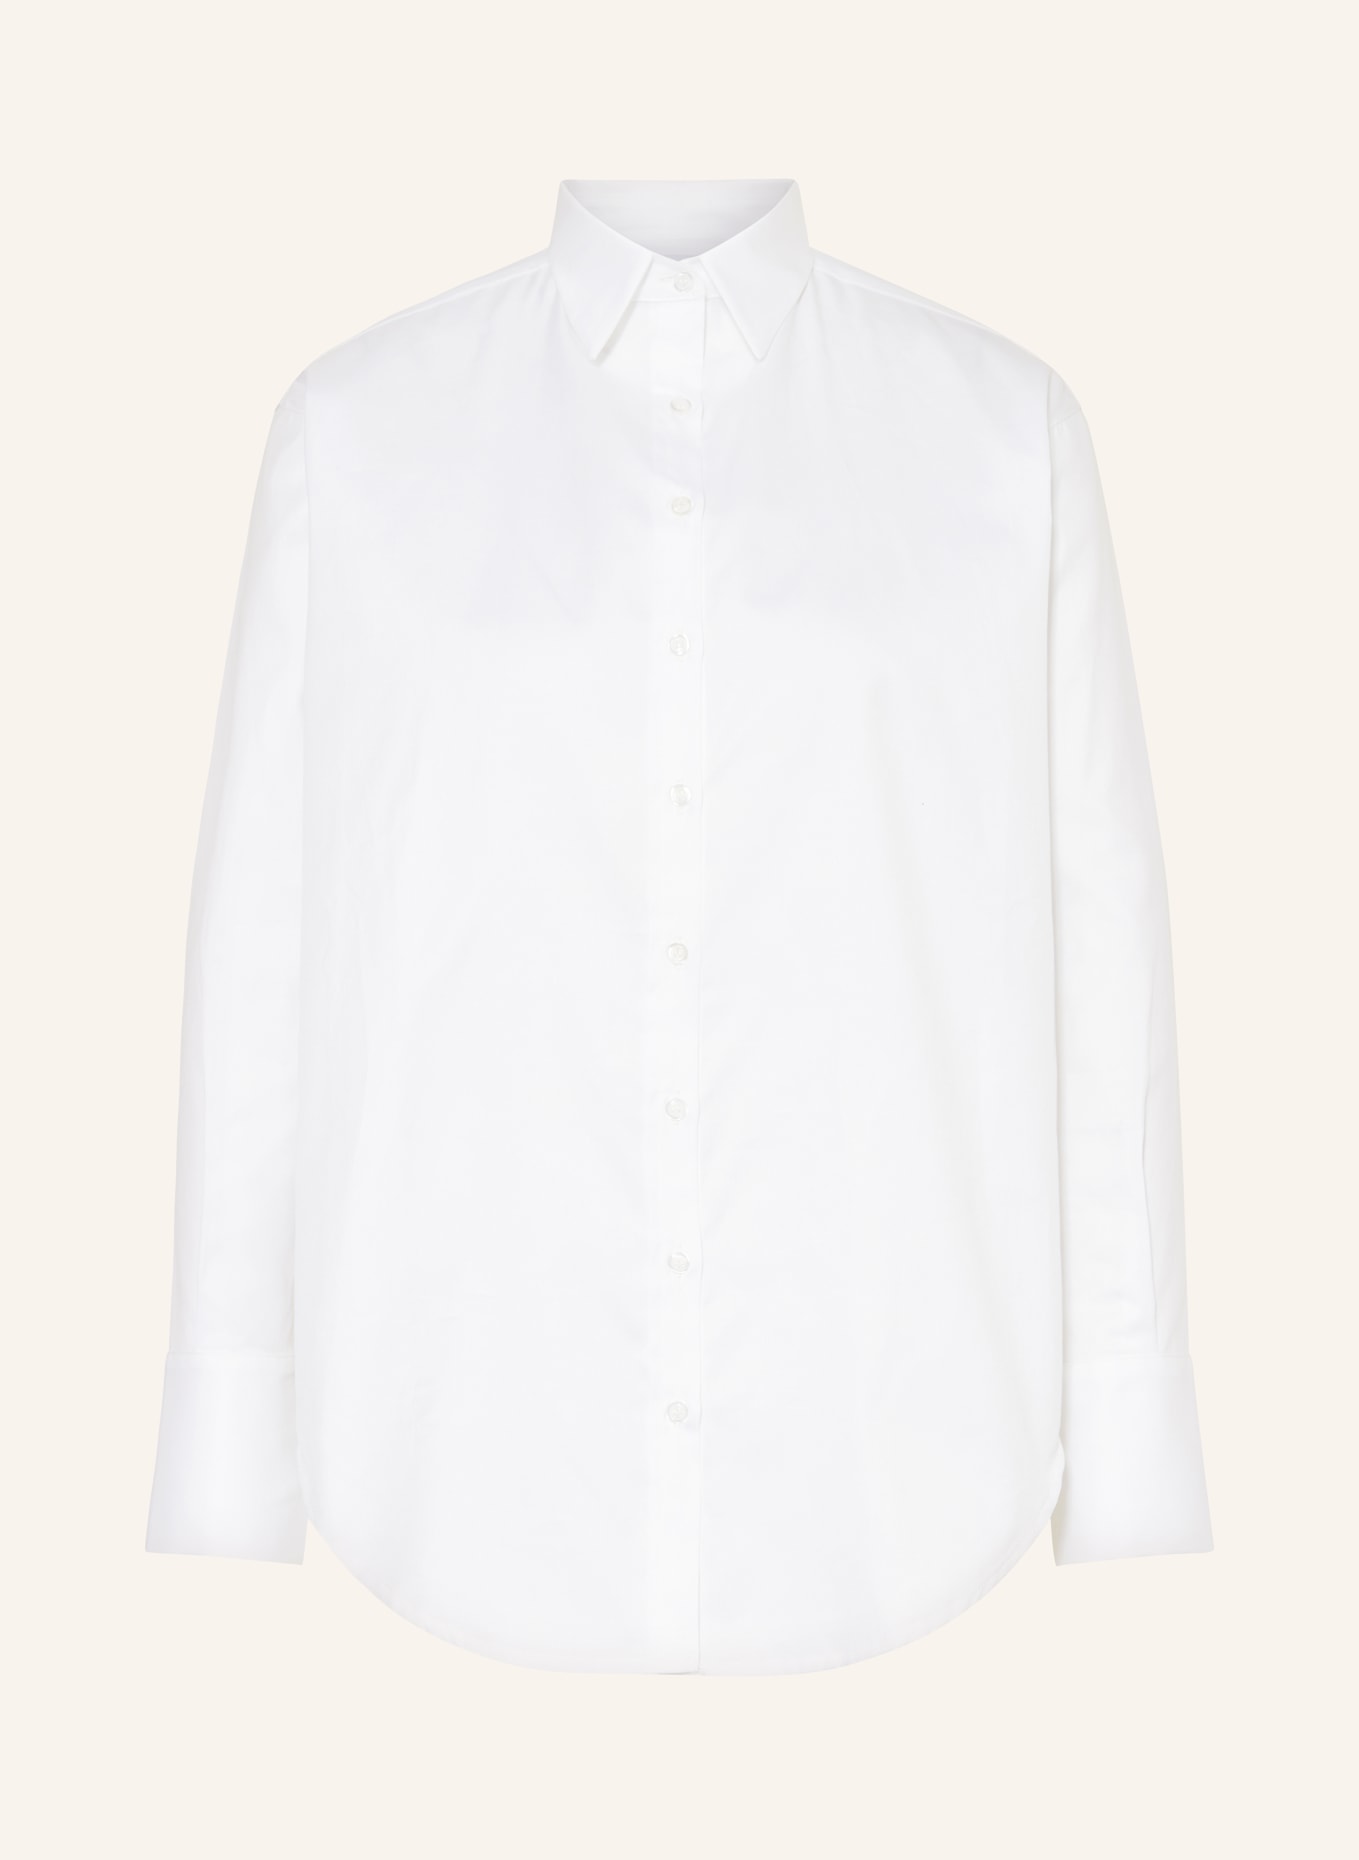 VIKTORIA LOUISE Shirt blouse THE LASTING, Color: WHITE (Image 1)